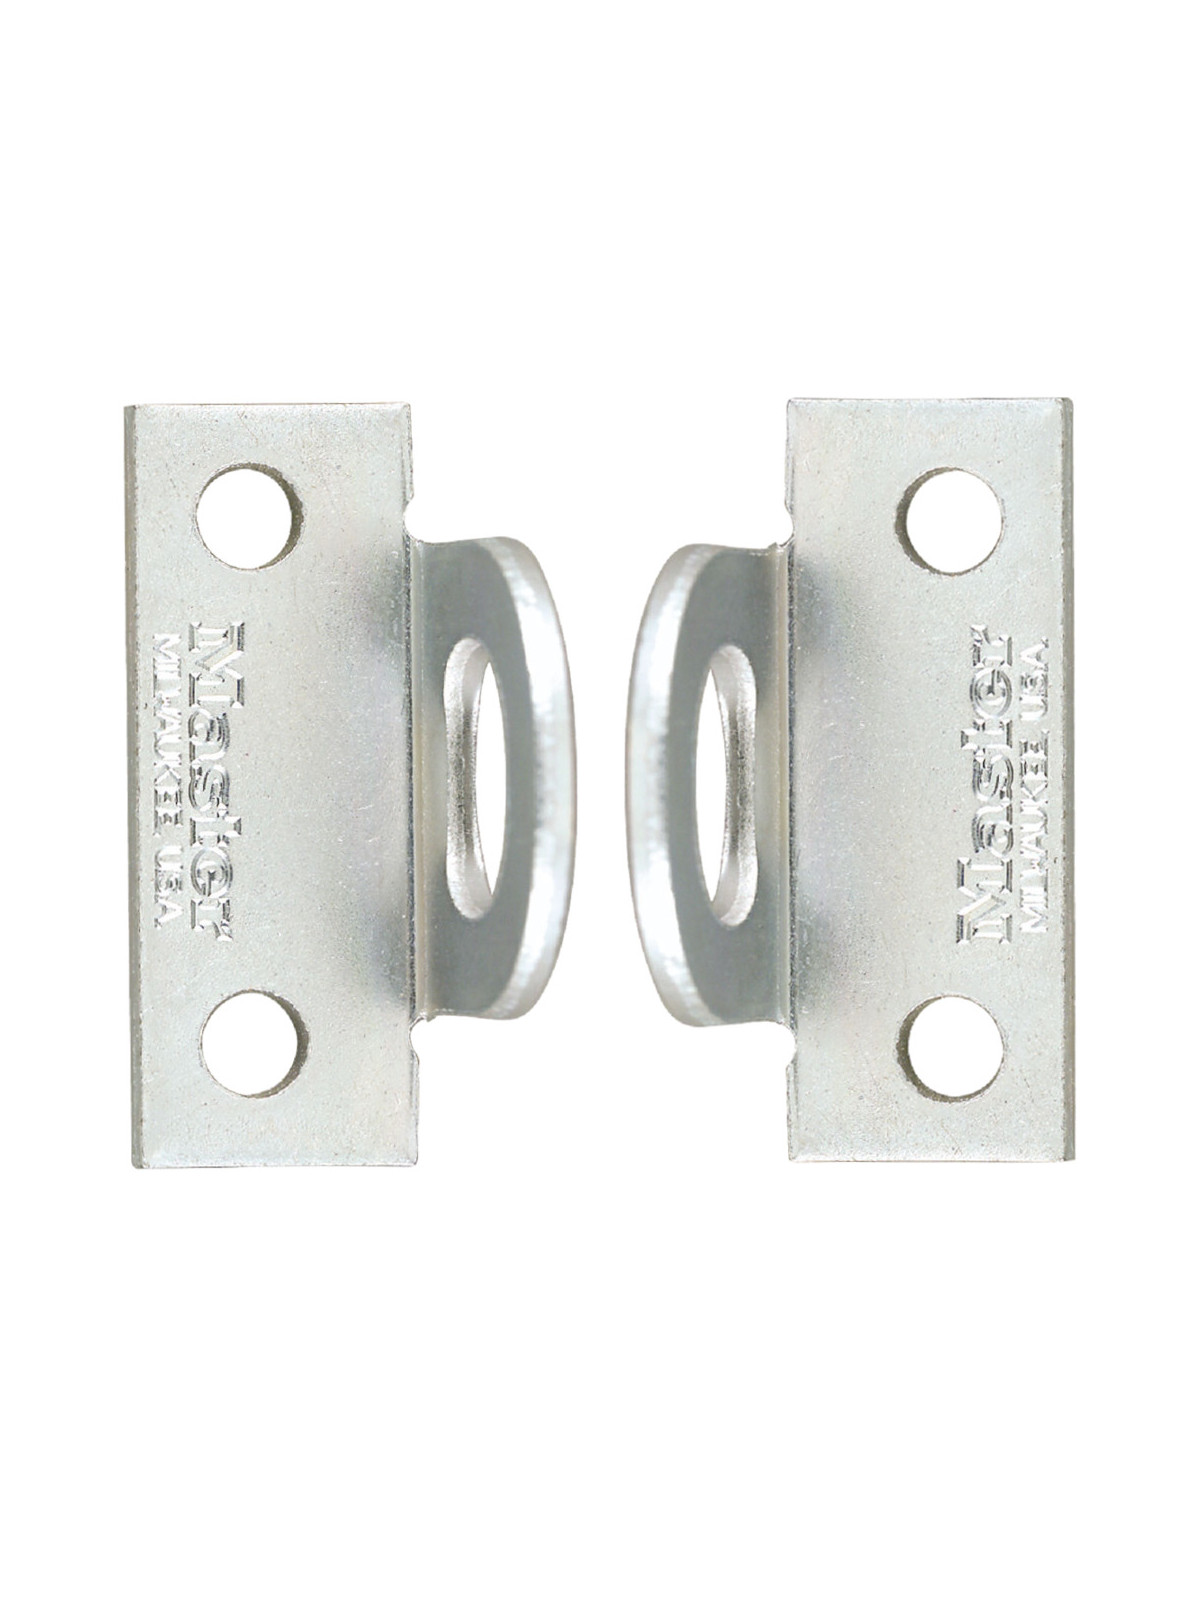 Porte cadenas ABUS 130/180 acier cémenté, anti-arrachement pour portes